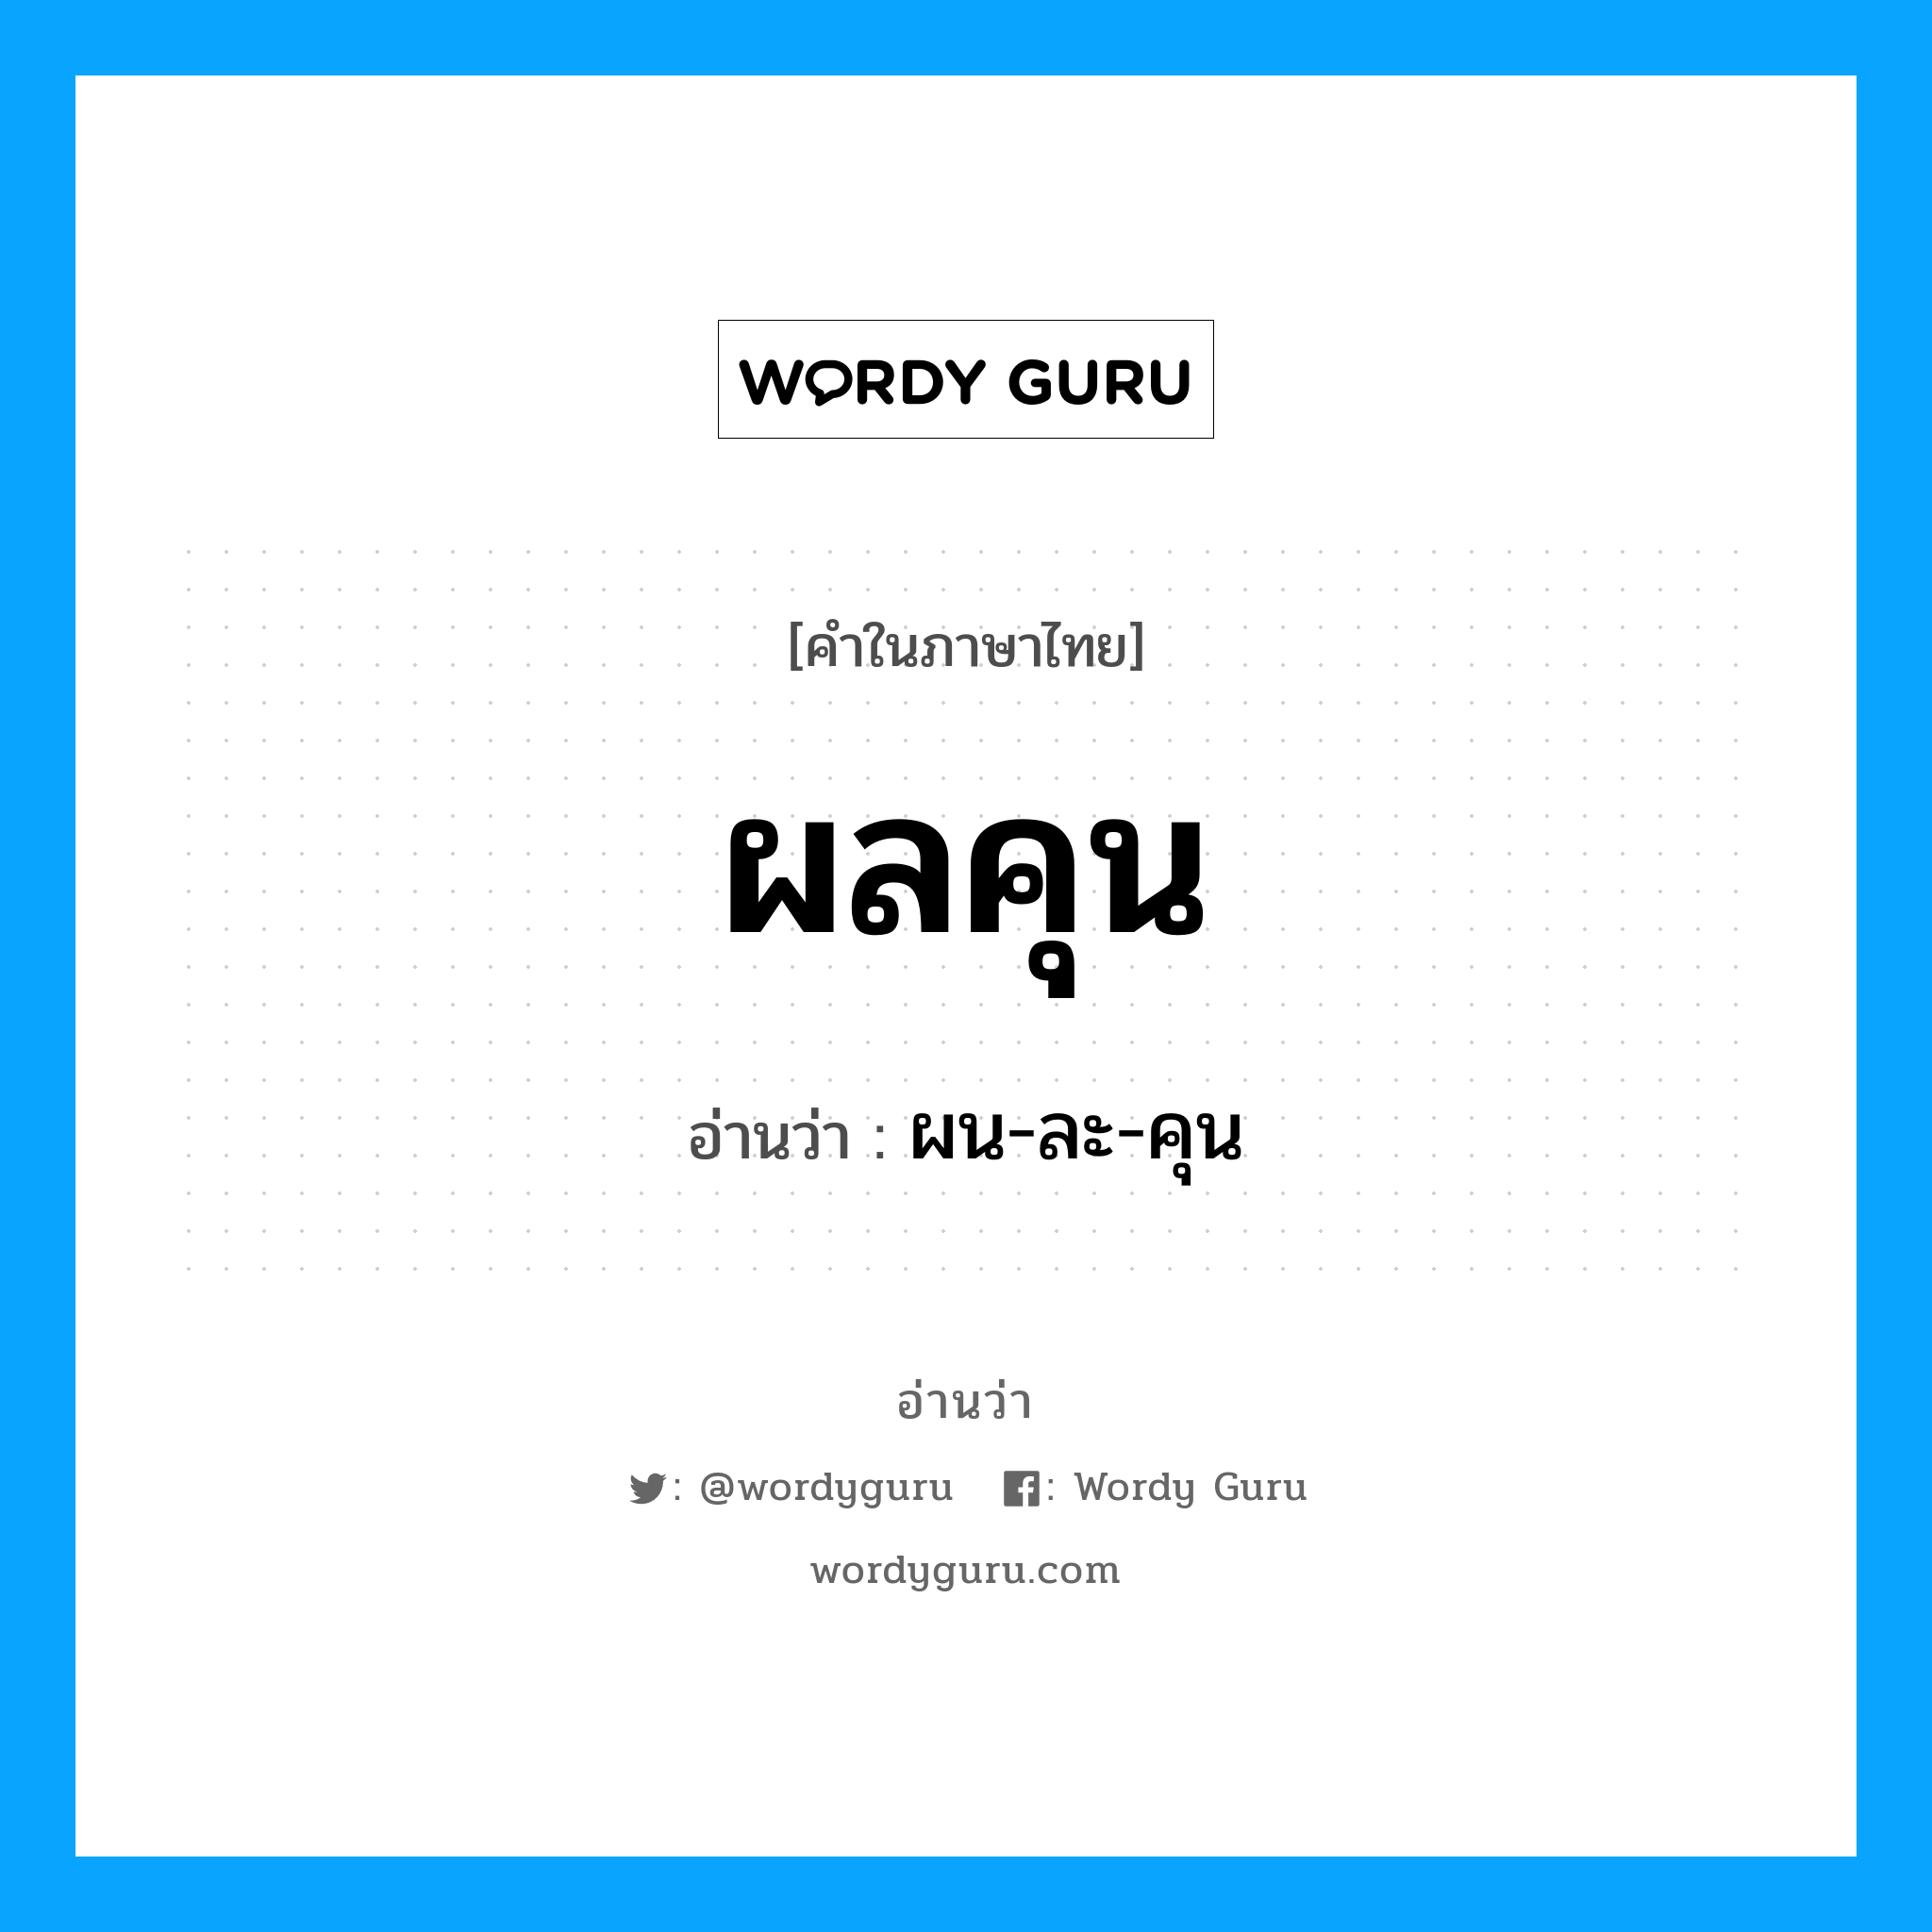 ผลคุน อ่านว่า?, คำในภาษาไทย ผลคุน อ่านว่า ผน-ละ-คุน